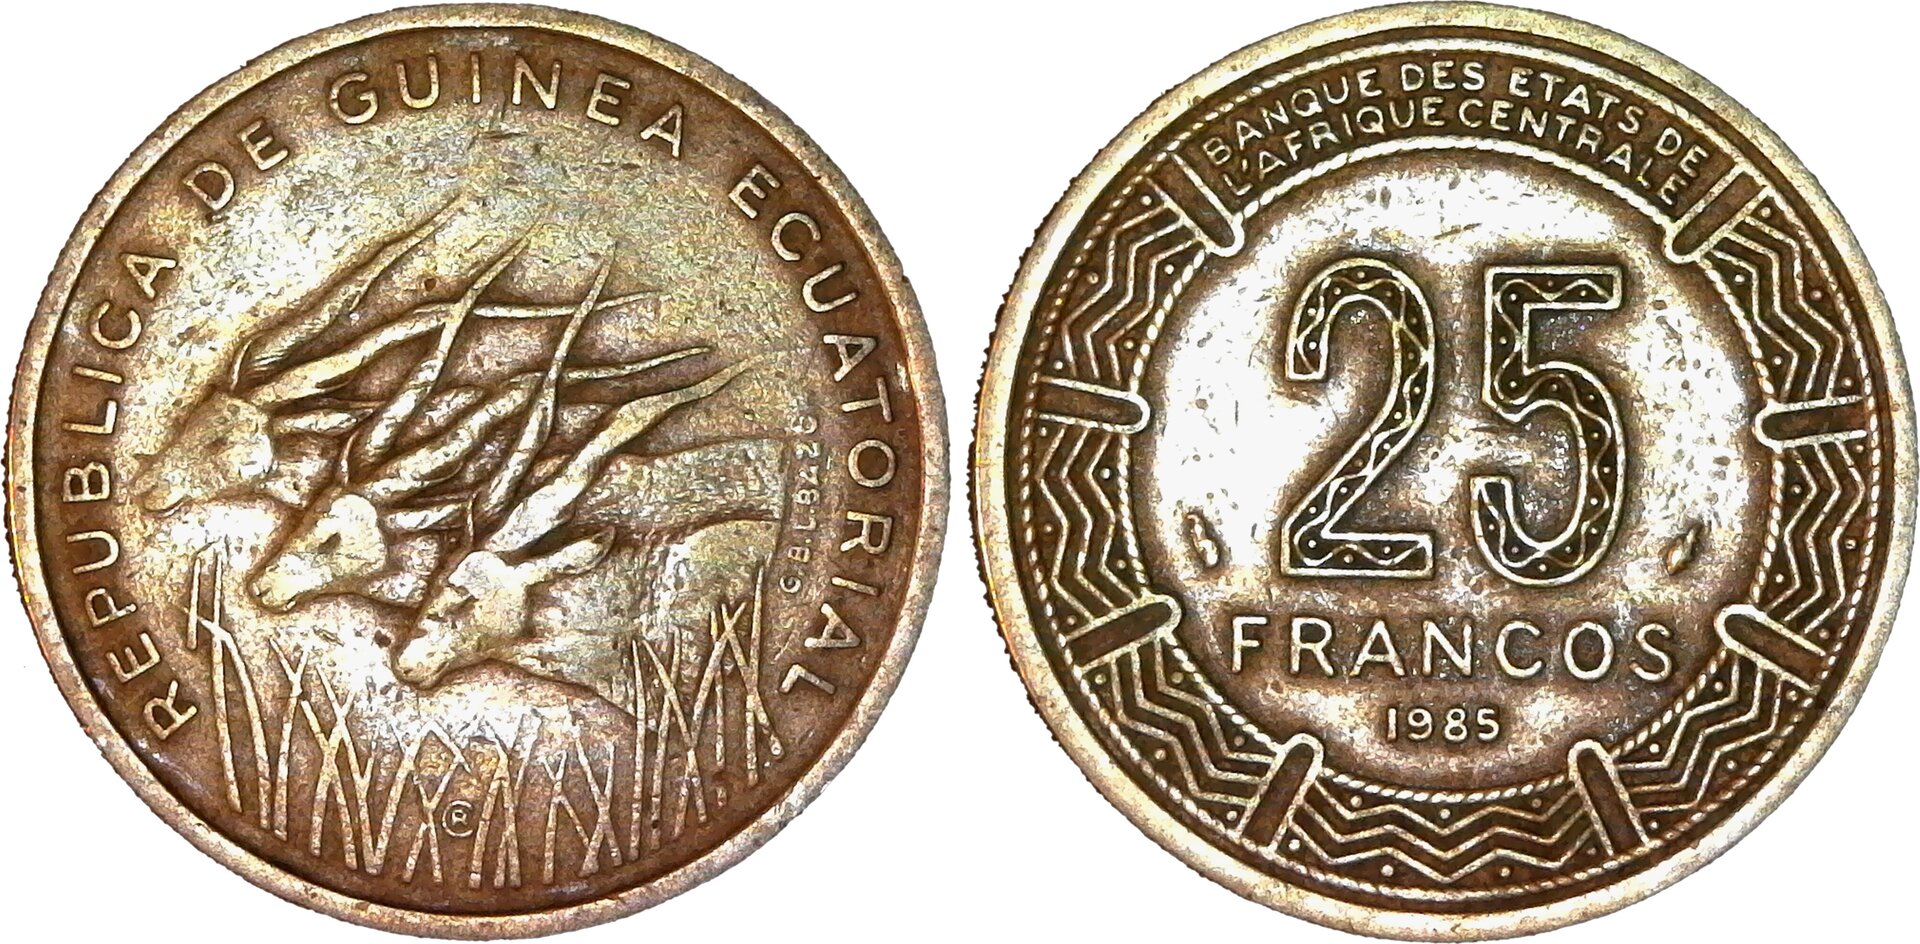 Equatorial Guinea 25 Francos 1985 reverse-side-cutout.jpg